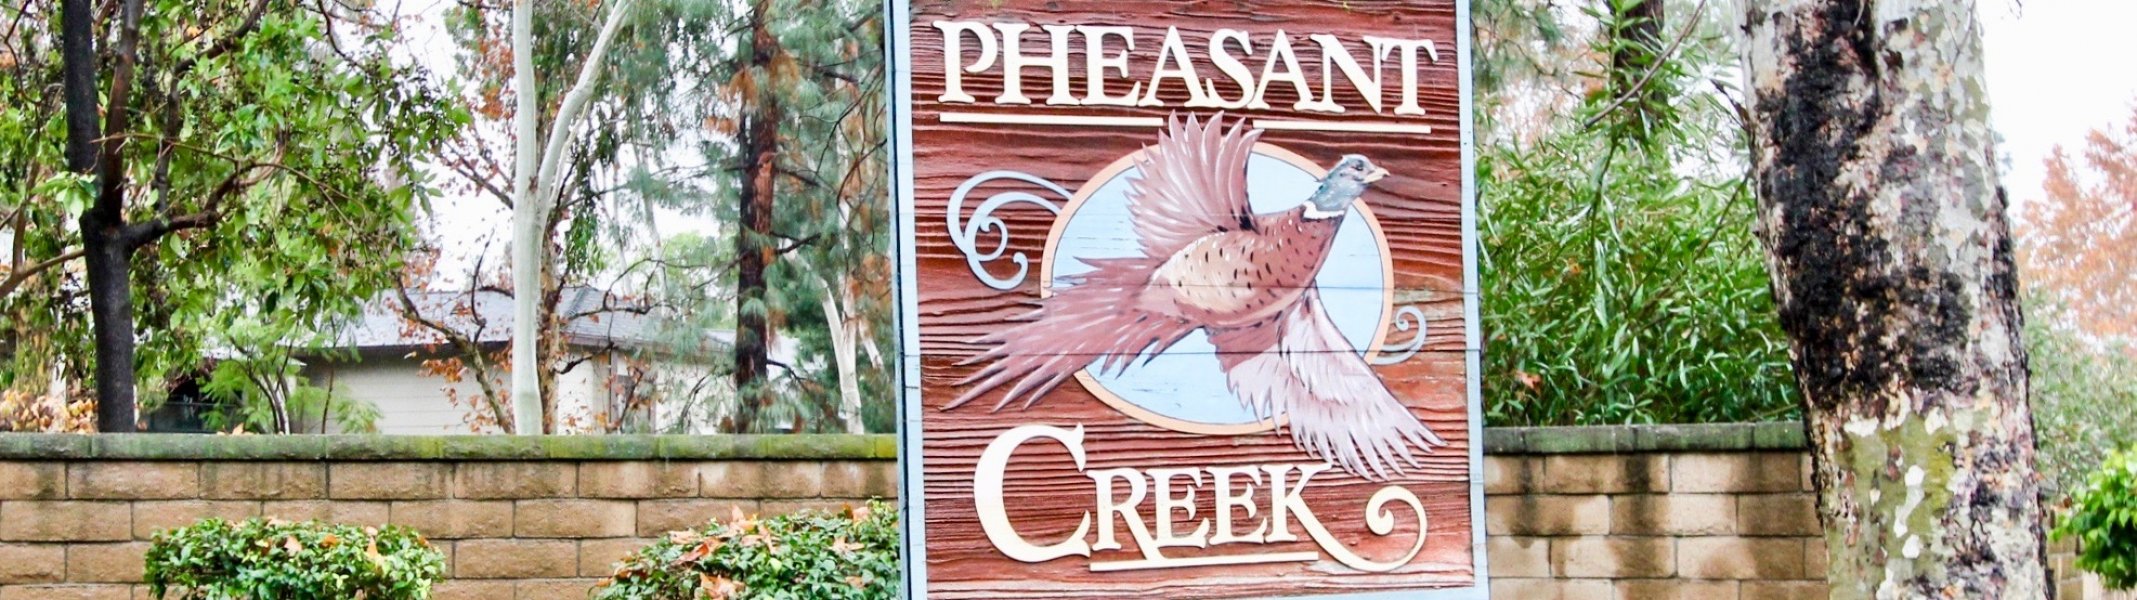 Pheasant Creek